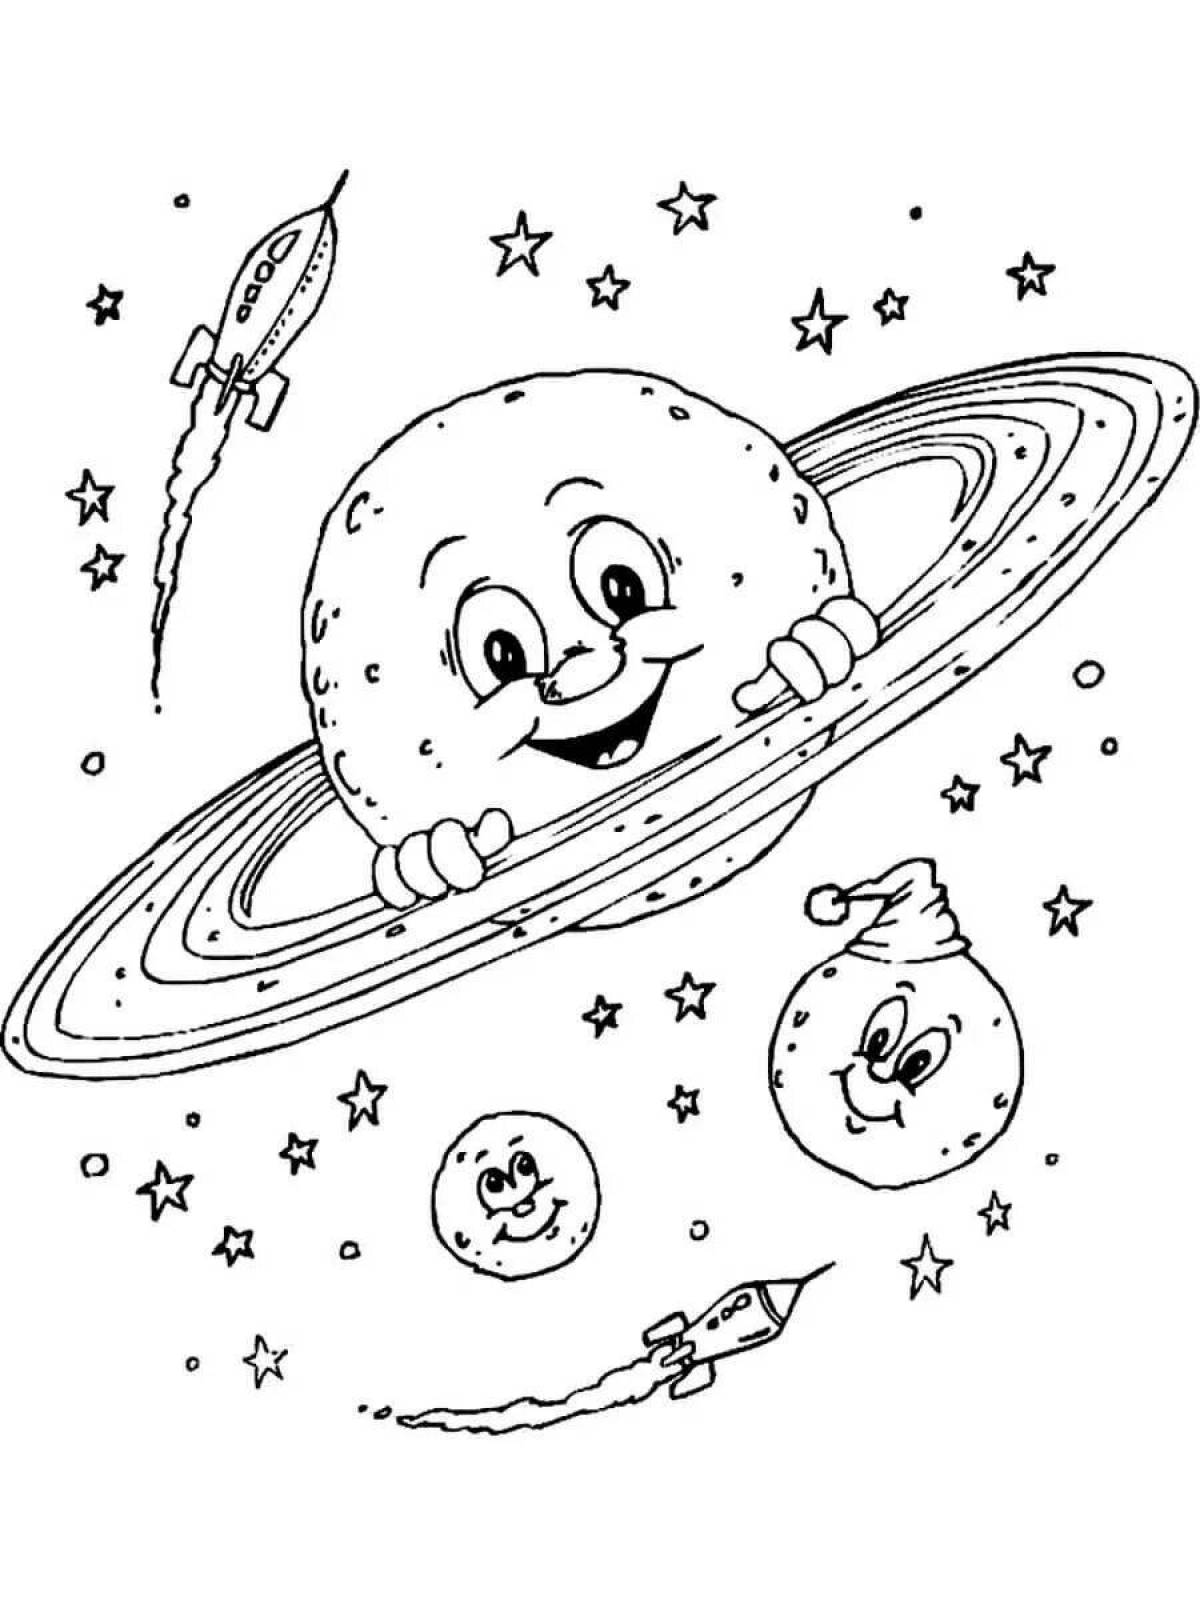 Трафареты ко дню космонавтики. Космос раскраска для детей. Раскраска. В космосе. Раскраска космос и планеты для детей. Раскраска на тему космос для детей.